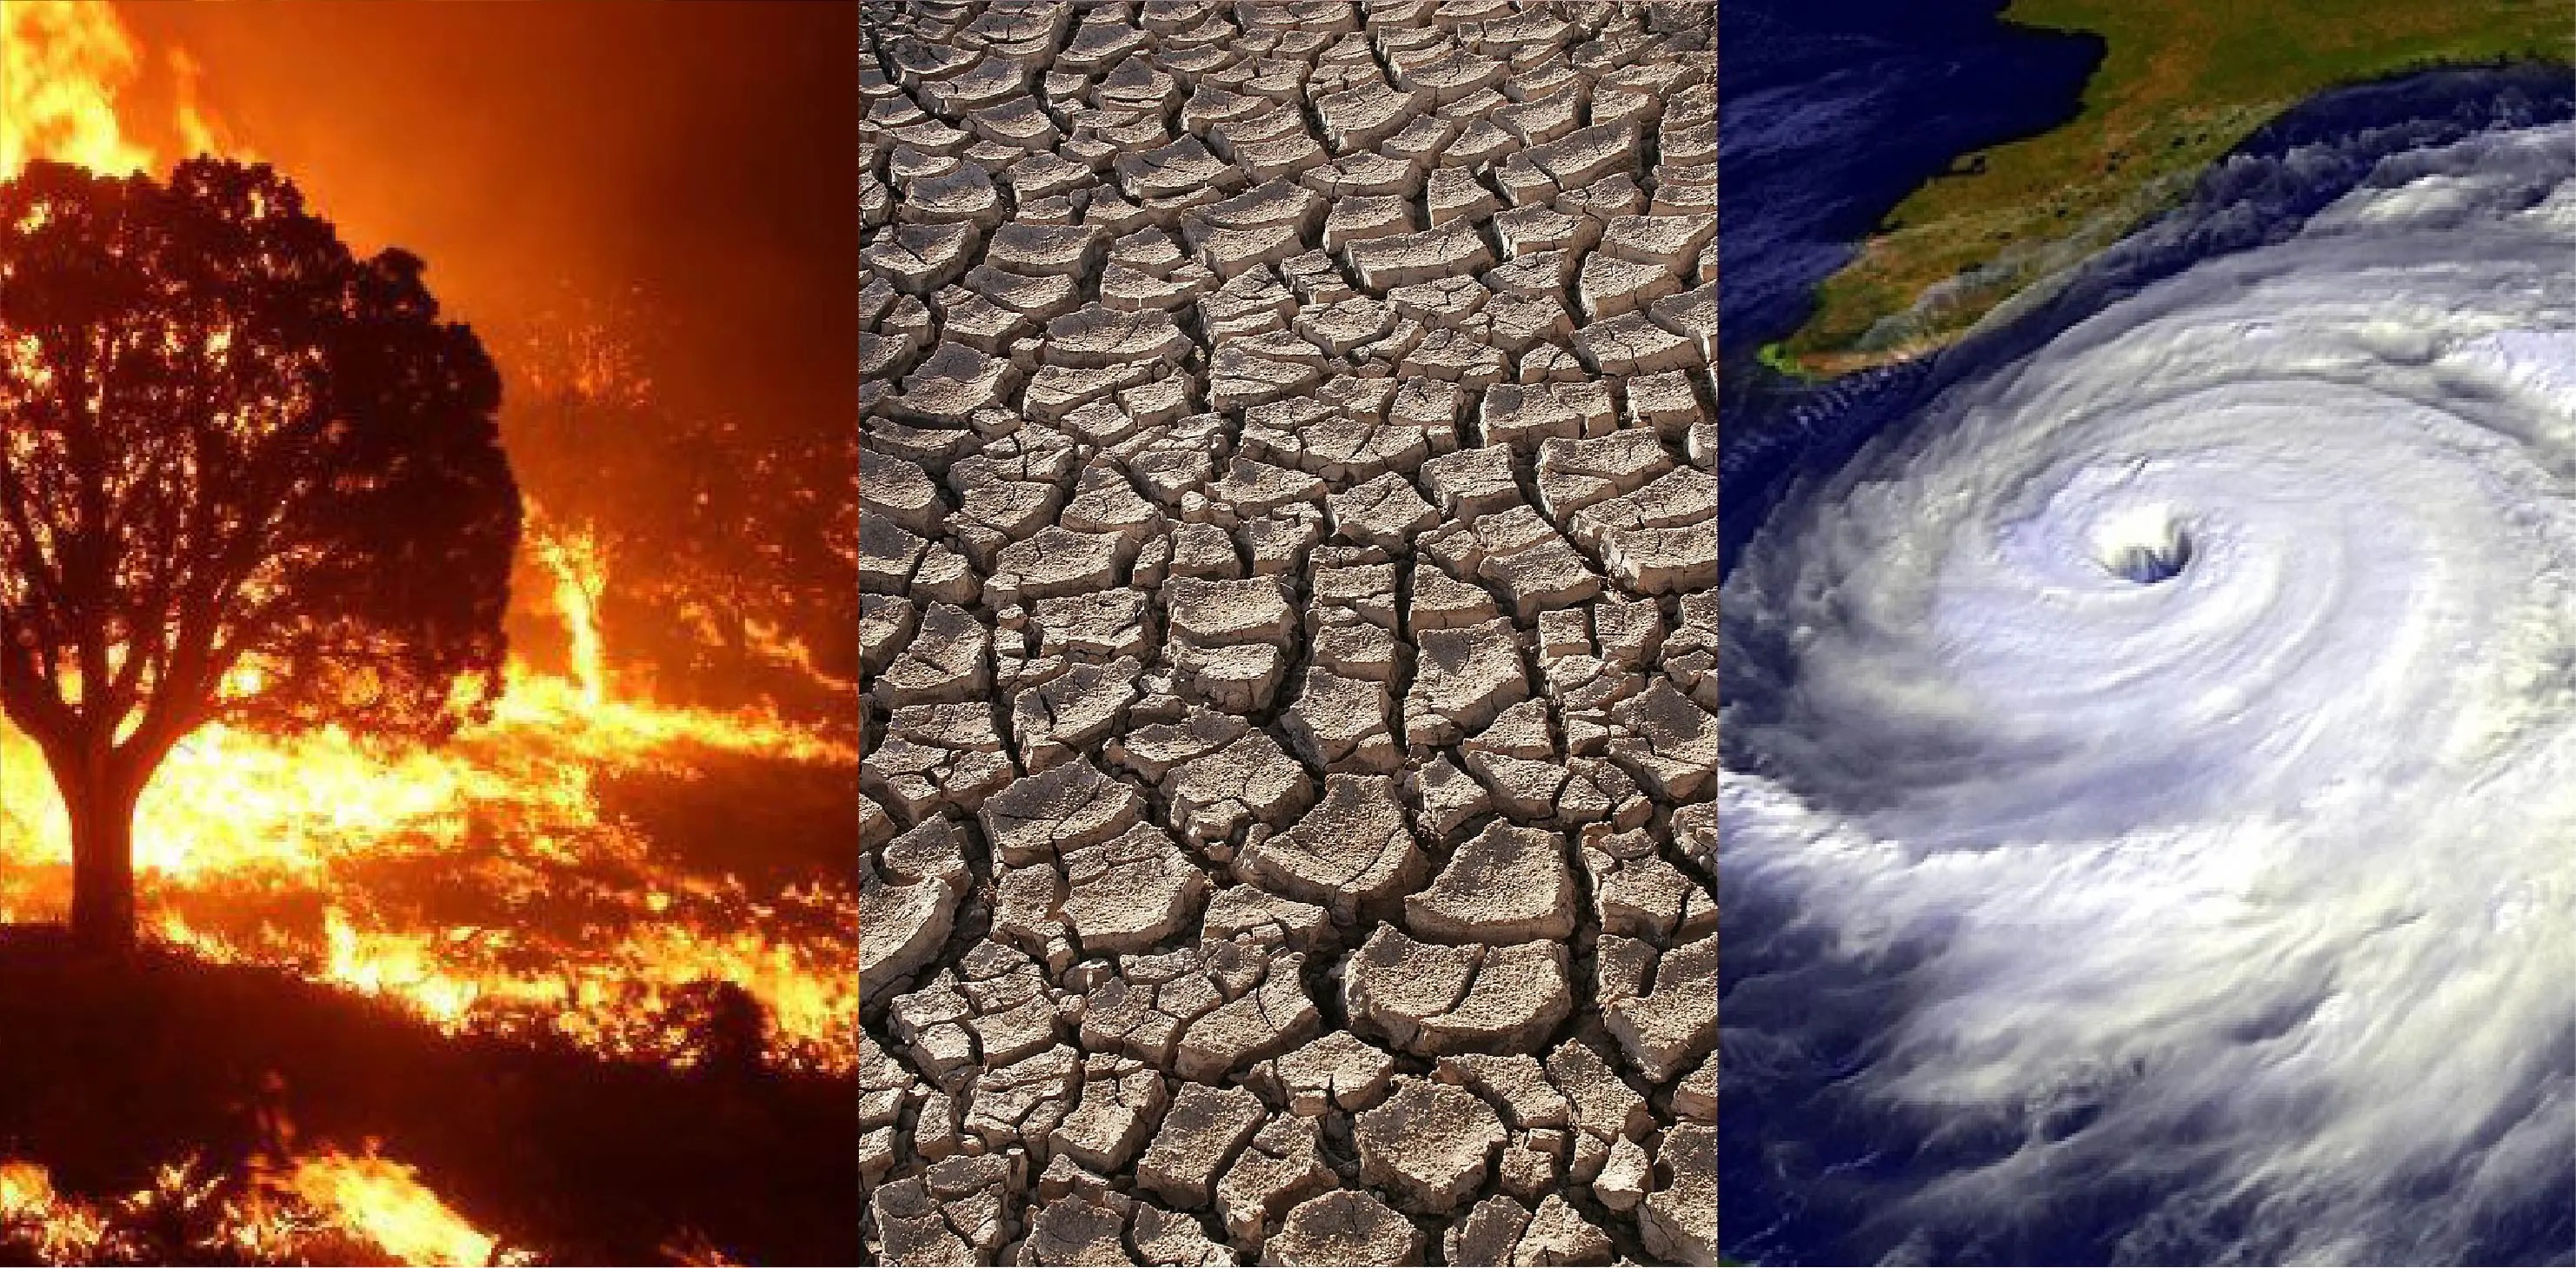 Los posibles efectos futuros del cambio climático global incluyen incendios forestales más frecuentes, períodos más prolongados de sequía en algunas regiones y un aumento en la duración e intensidad de las tormentas tropicales.